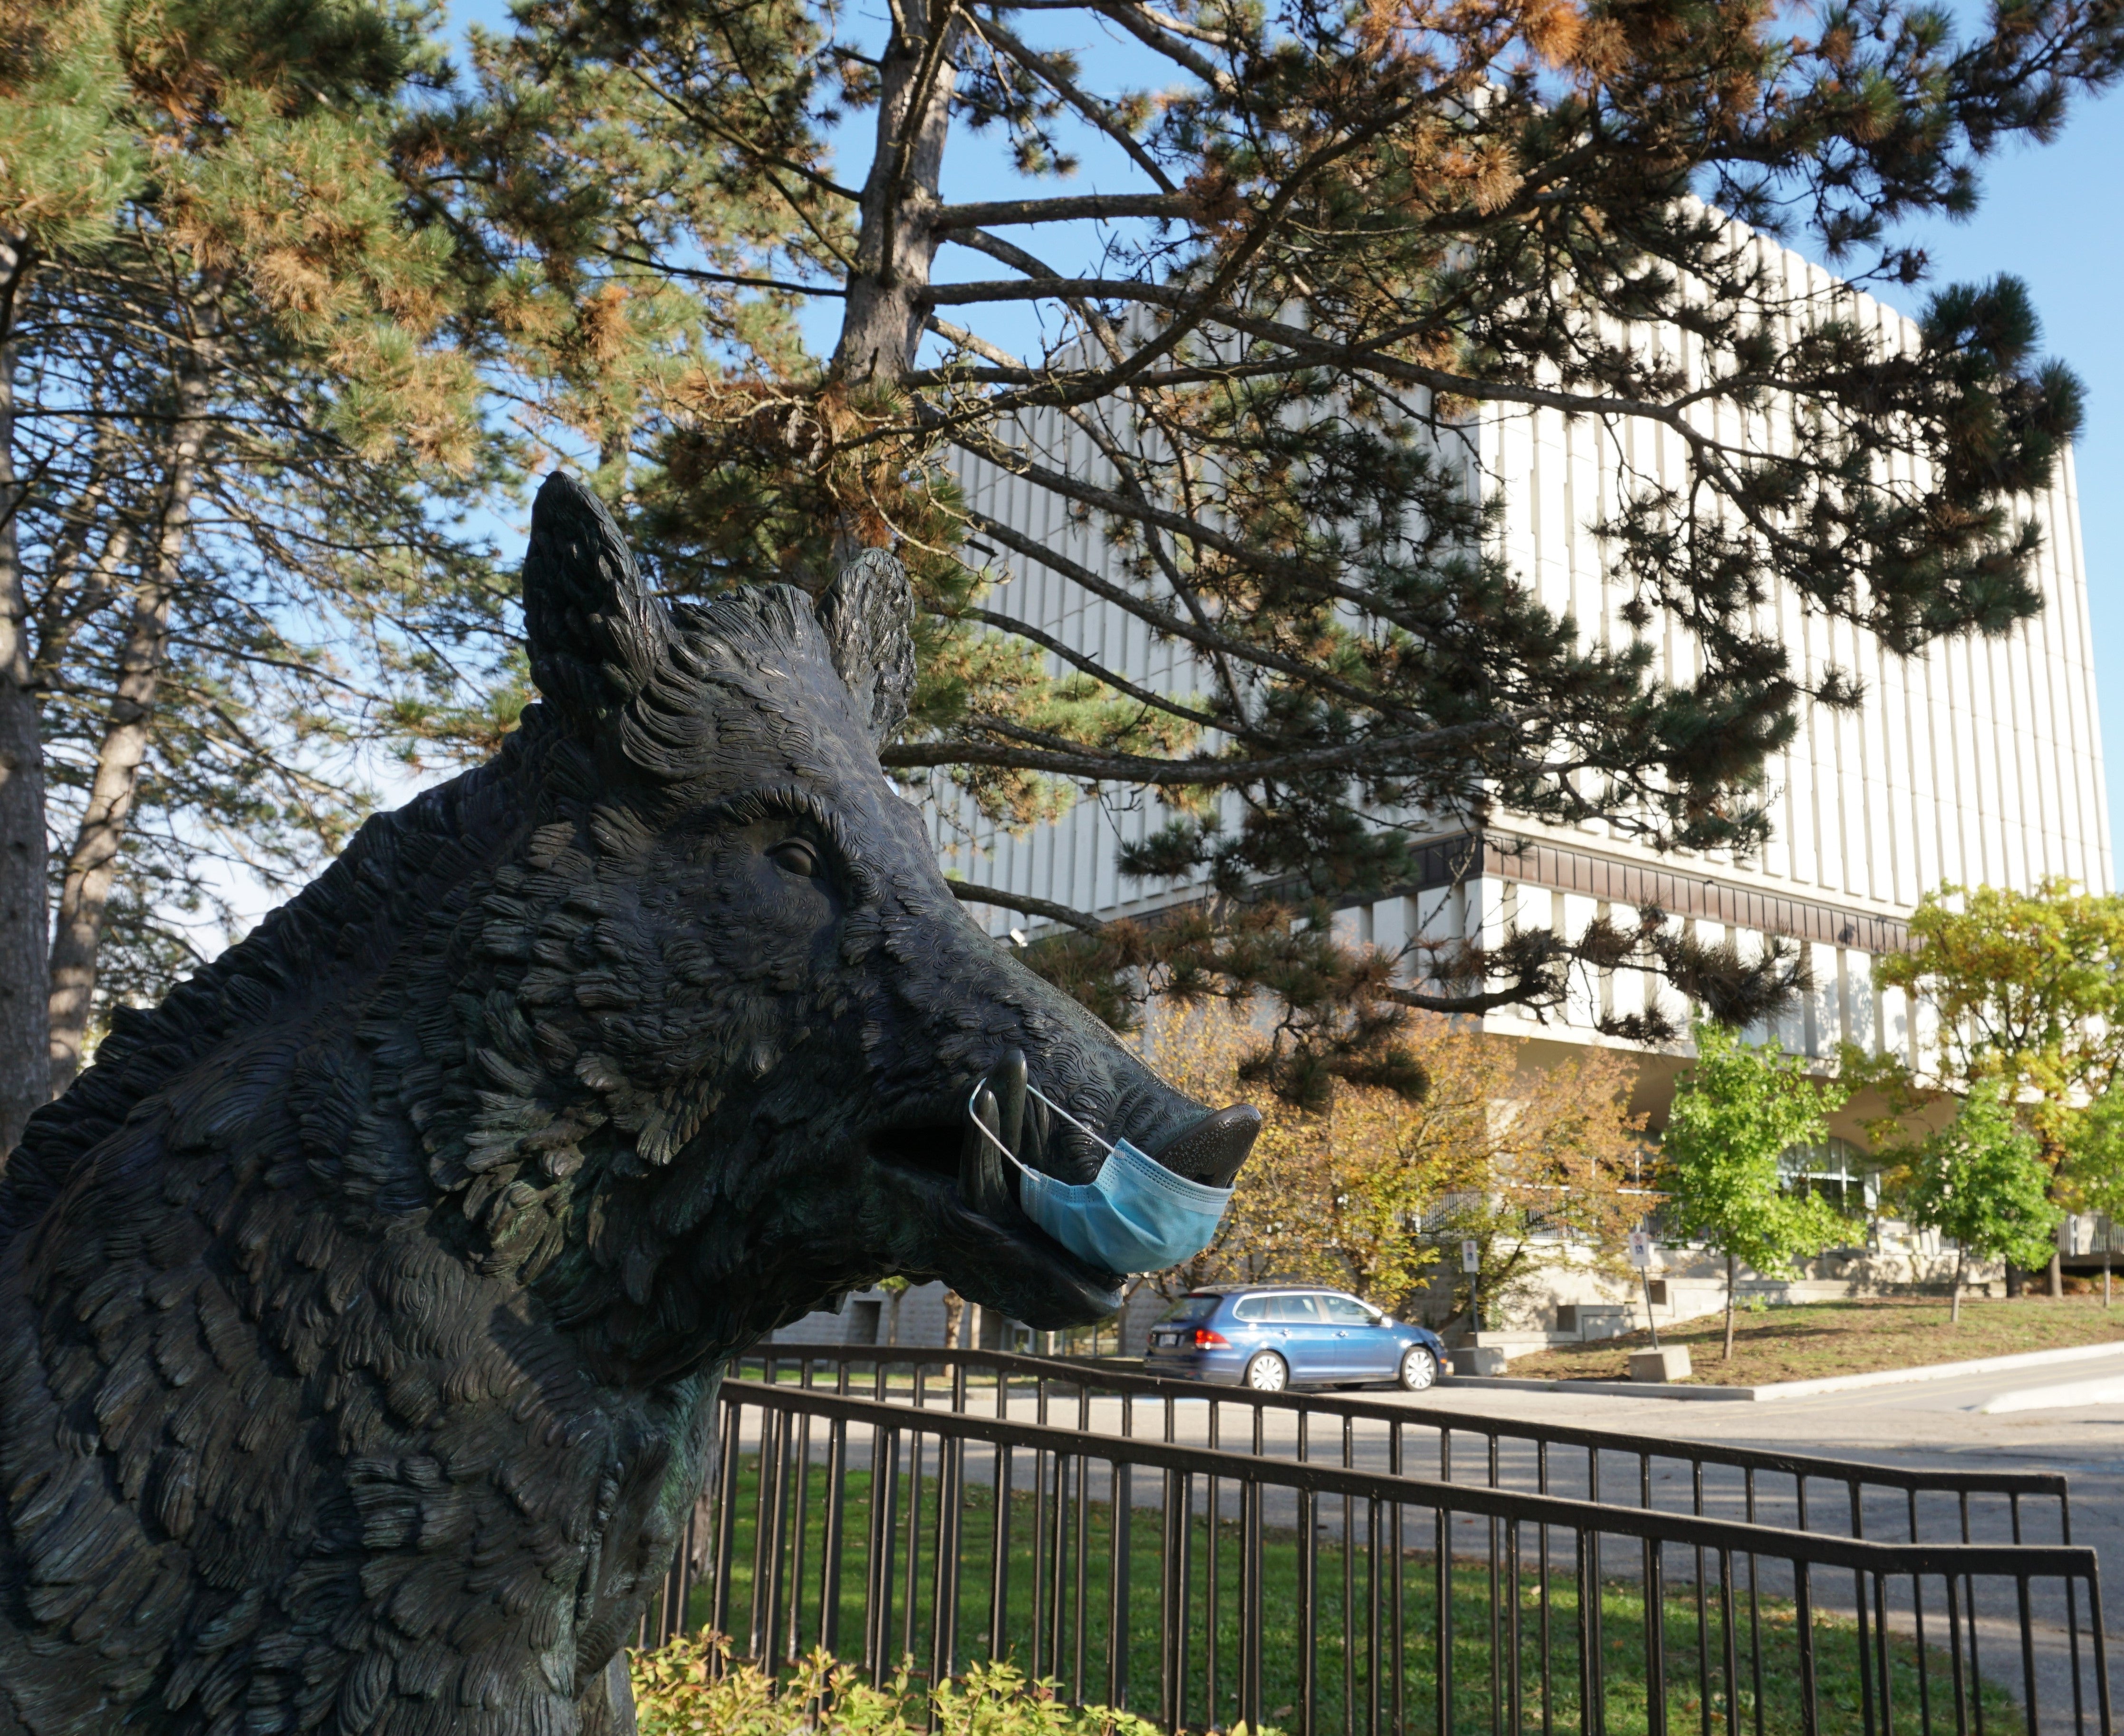 Statue of a wart hog